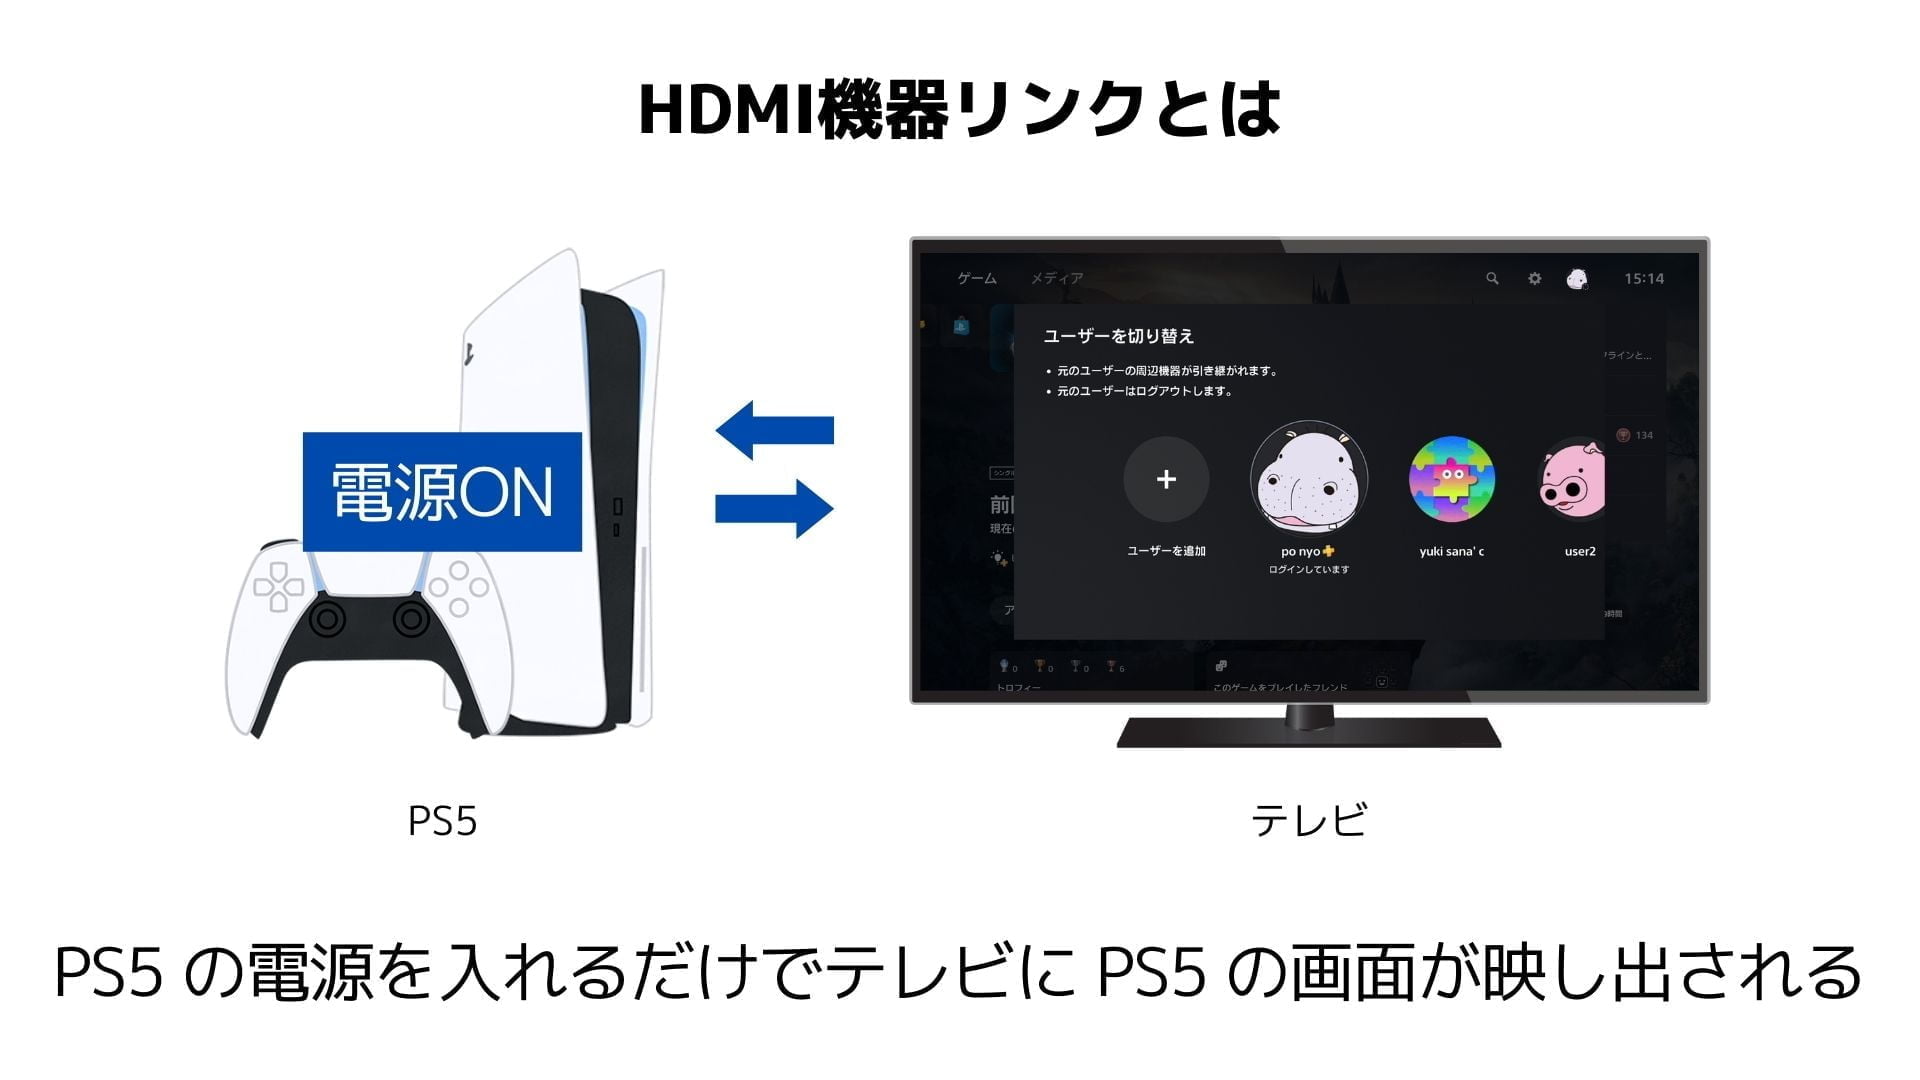 PS5のHDMI機器リンクの図解